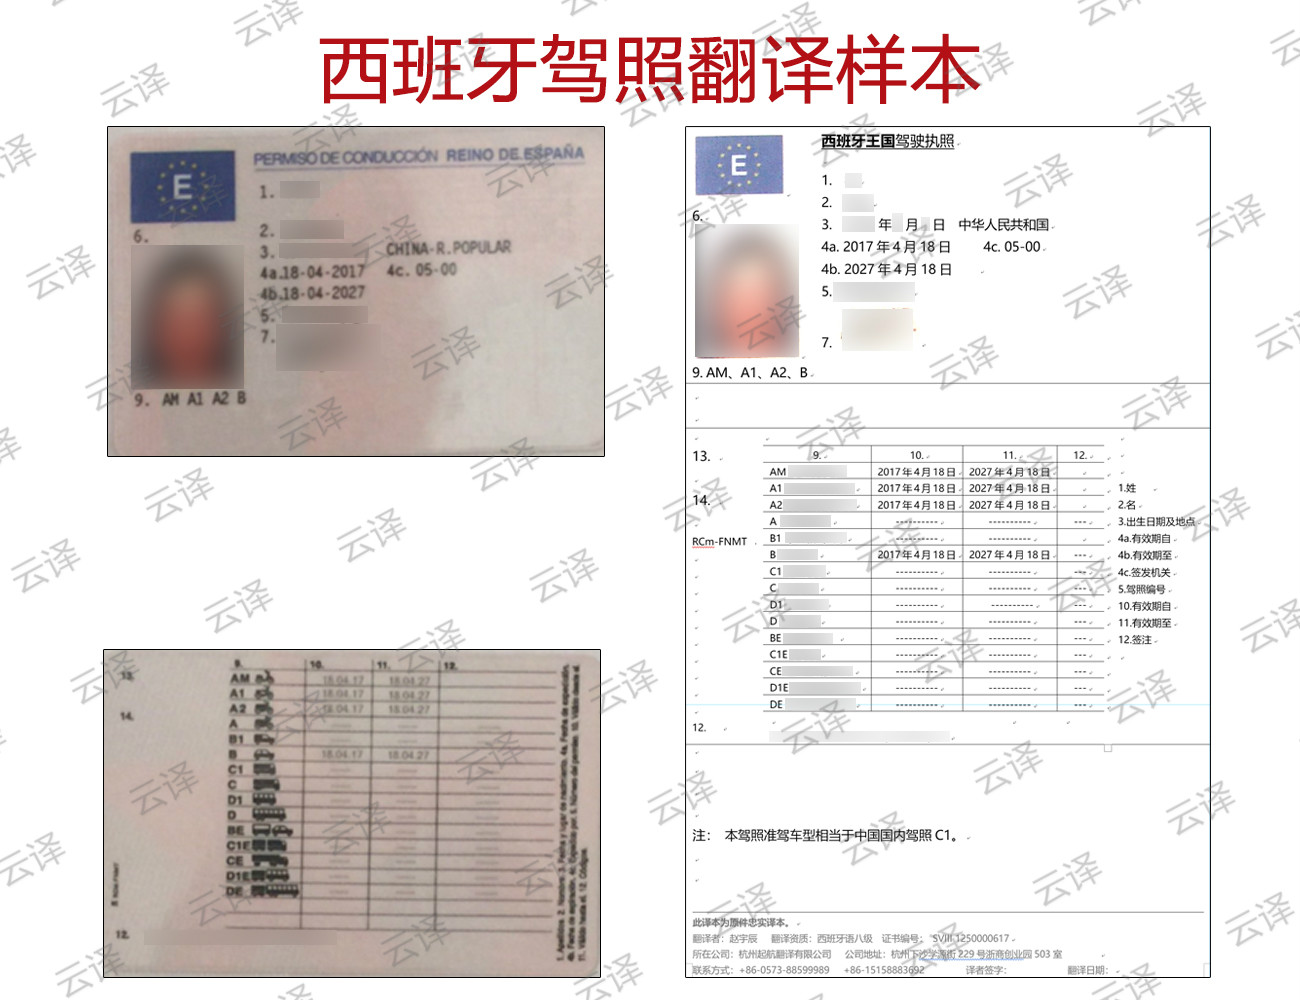 租租车“小白本”——国际驾照翻译认证件将在8月28日全新升级